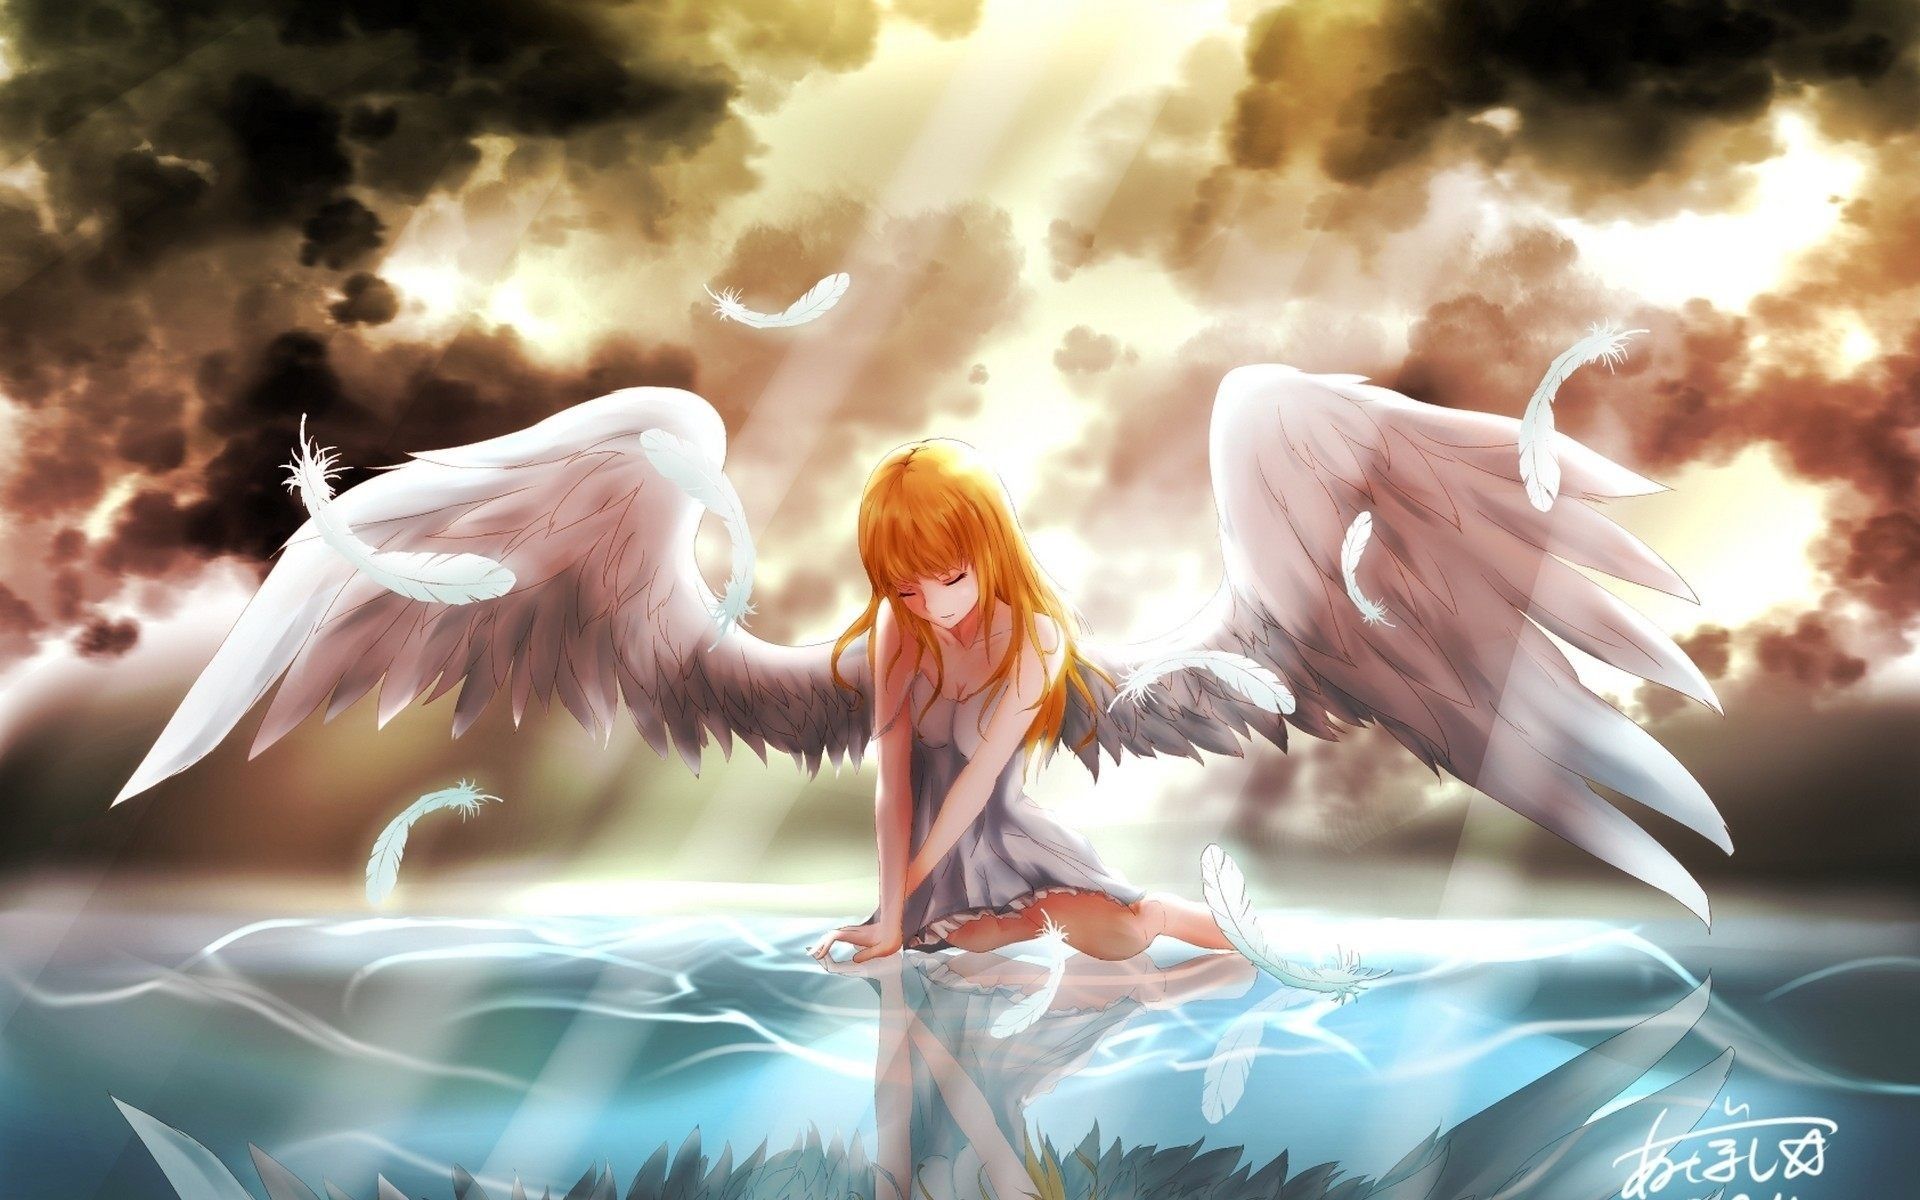 Anime Angel Wallpaper Background #anime #angel #wallpaper. Anime